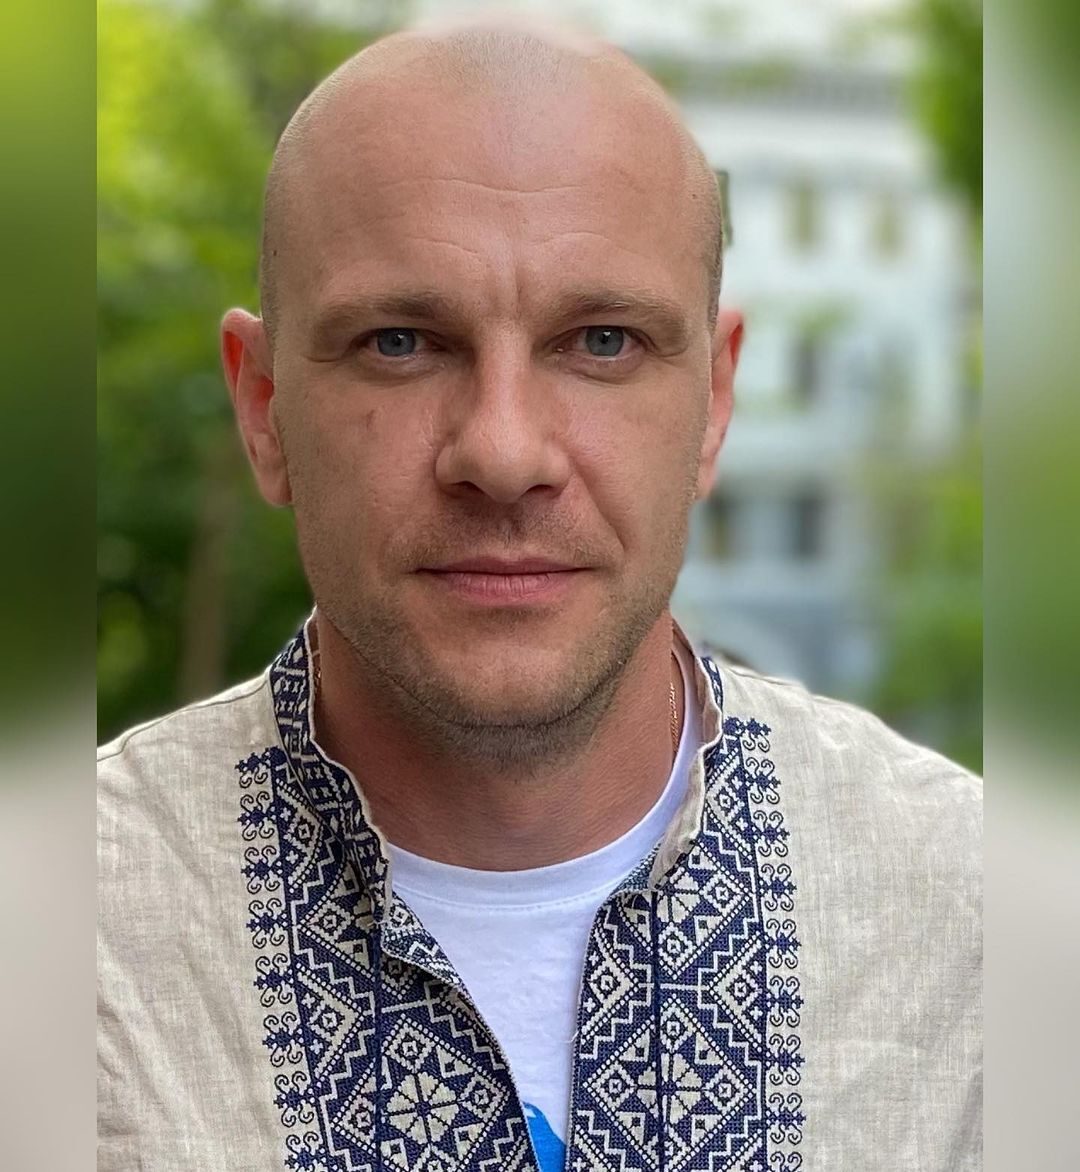 Актор із Білорусі Павло Вишняков зізнався, що хотів би отримати українське громадянство: постійно виникають проблеми, затримання